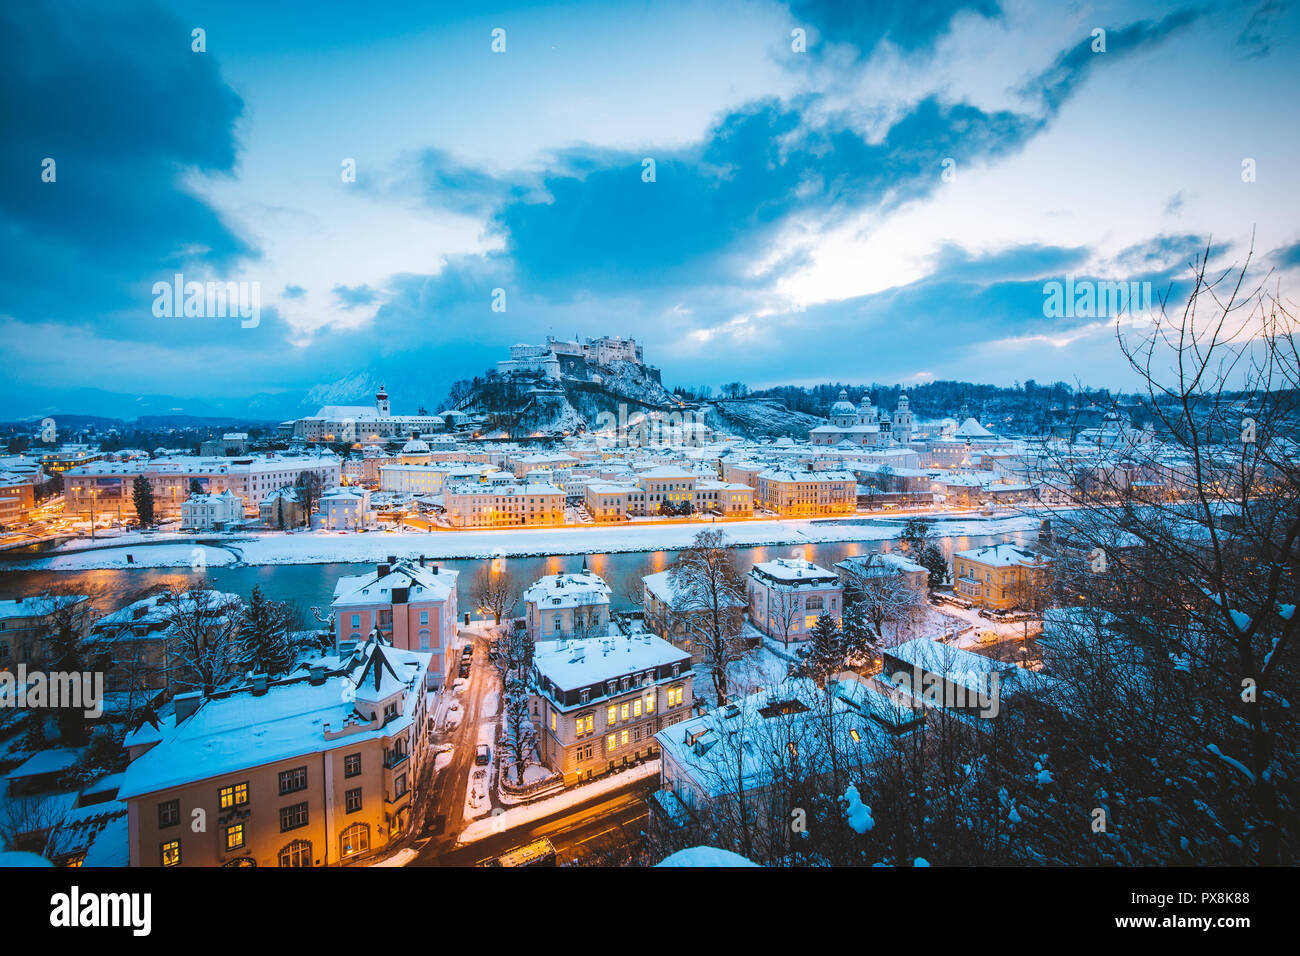 Klassische Ansicht von der historischen Stadt Salzburg mit der berühmten Festung Hohensalzburg und Salzach Fluss beleuchtet in schöne Dämmerung im malerischen Chri Stockfoto